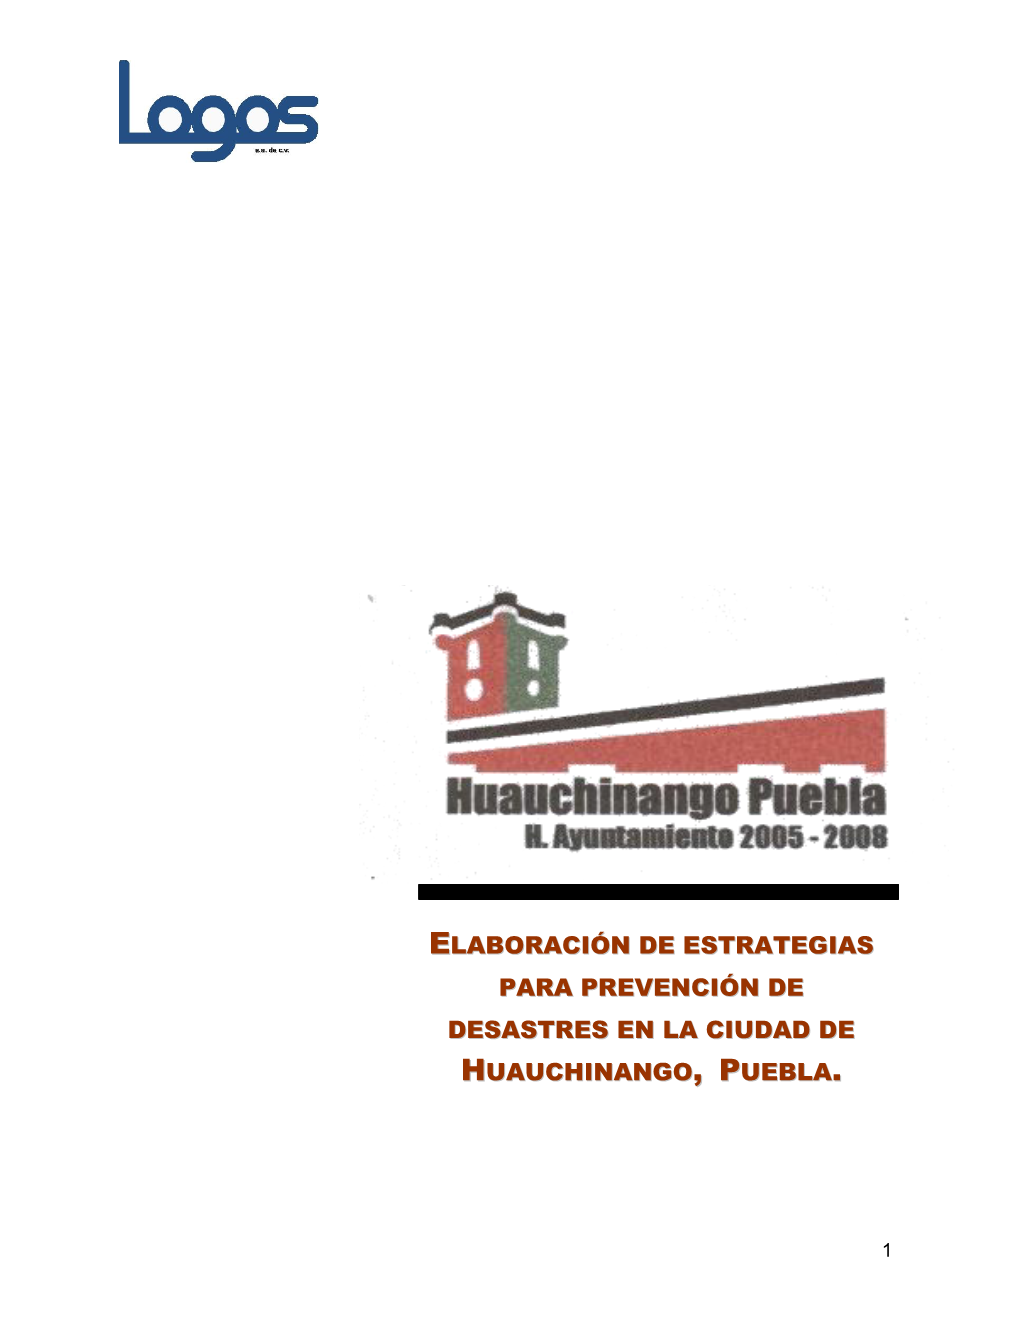 Atlas De Riesgos Del Estado De Puebla, Secretaría De Gobernación, Tercera Edición, Puebla 2000, P